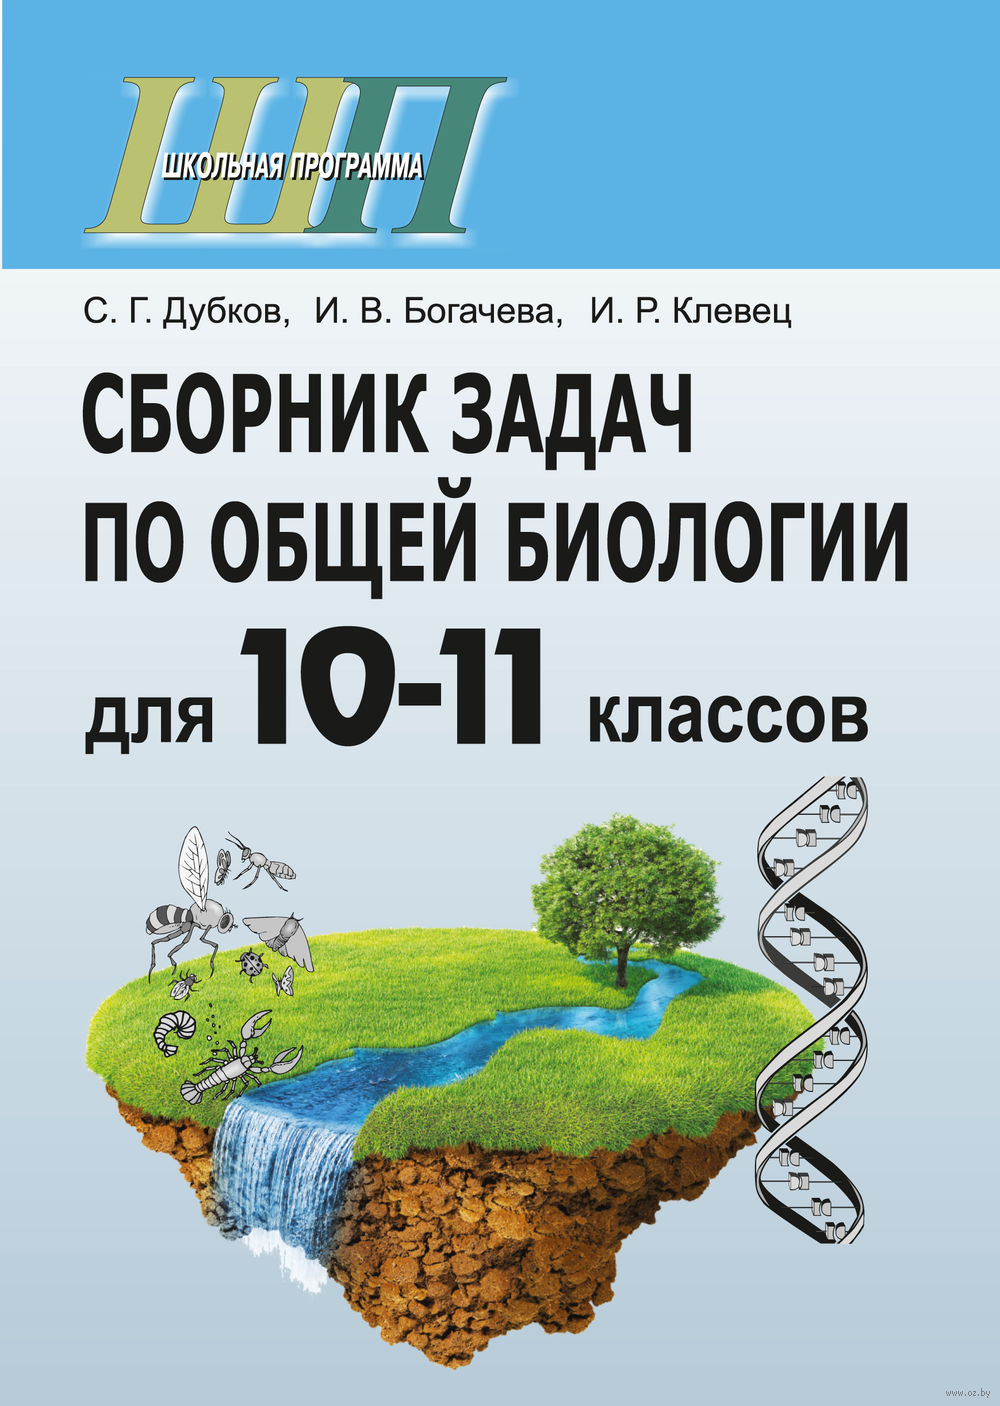 Сборник задач по общий биологии для 10-11 класса дубков